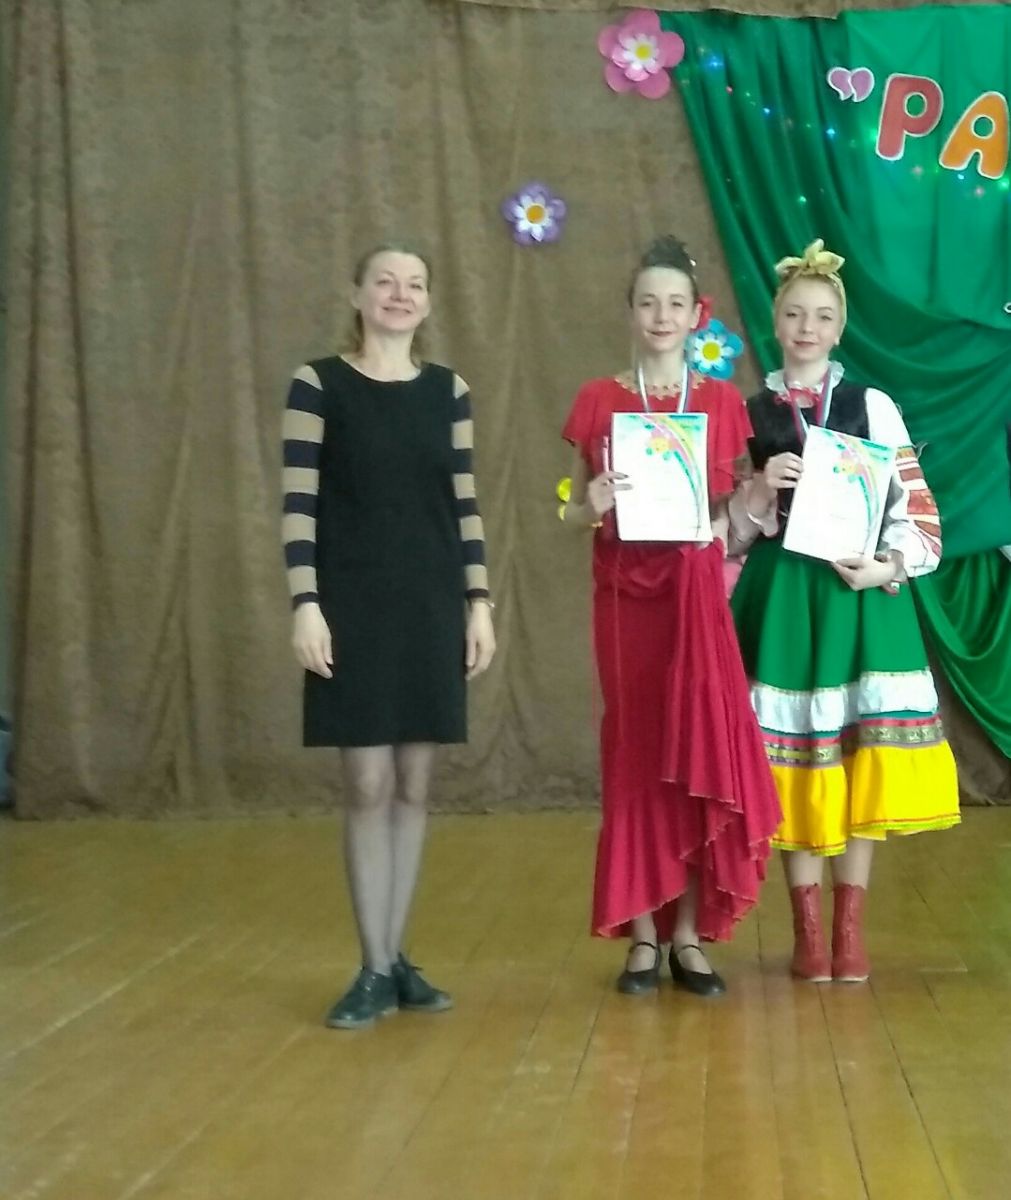 21 апреля в ЦКР "Молодежный"состоялся Межрегиональный фестиваль хореографического искусства малых форм "Радуга танца"